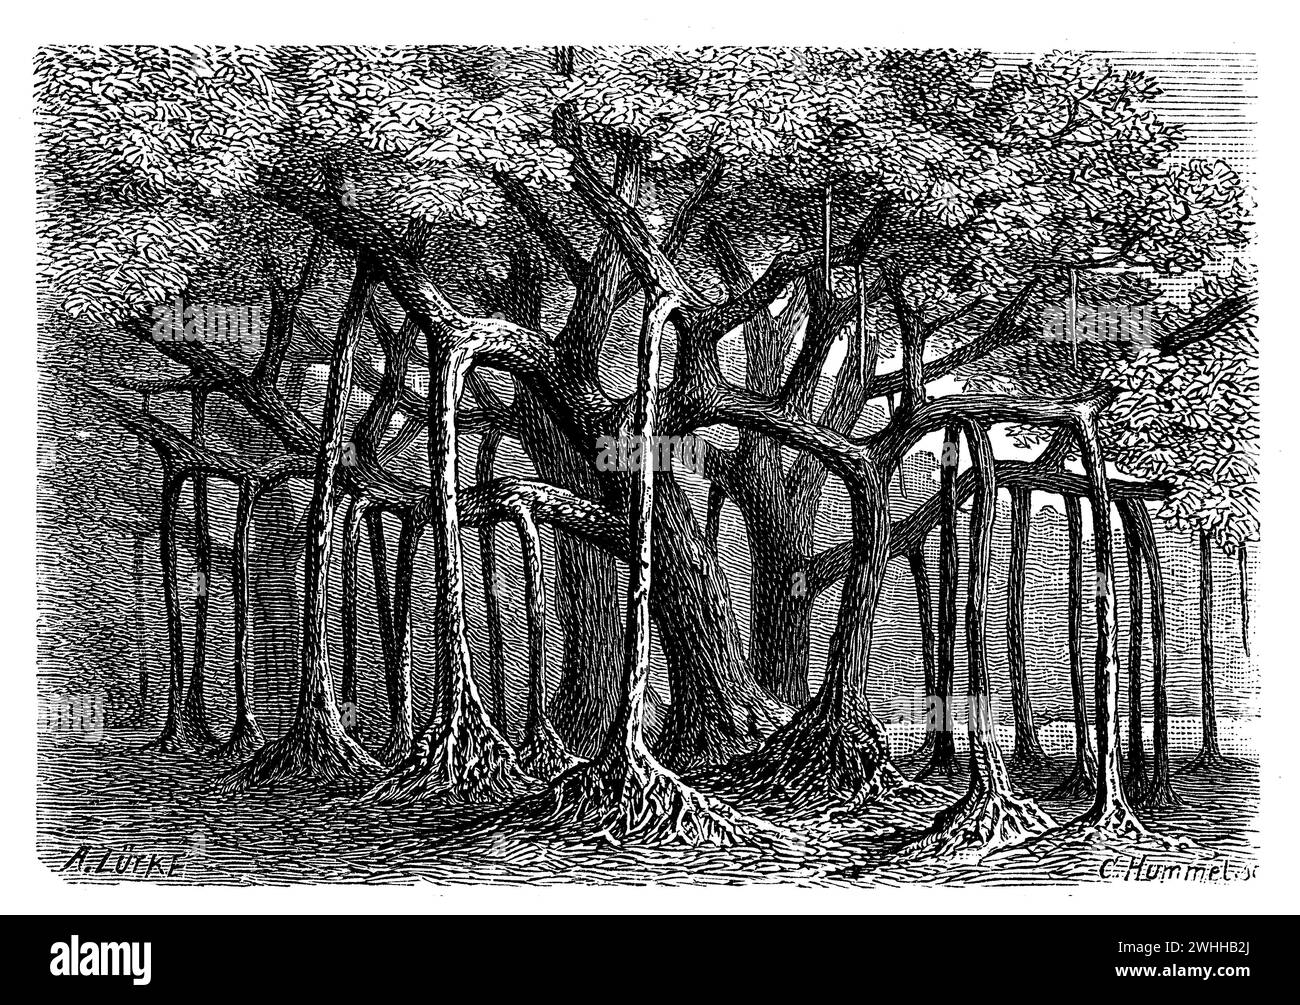 Heilige Feige, Ficus religiosa, A. Lütke u. C. Hummel sc (Botanik, 1888), Pappel-Feige, Figuier des pagodes Stockfoto